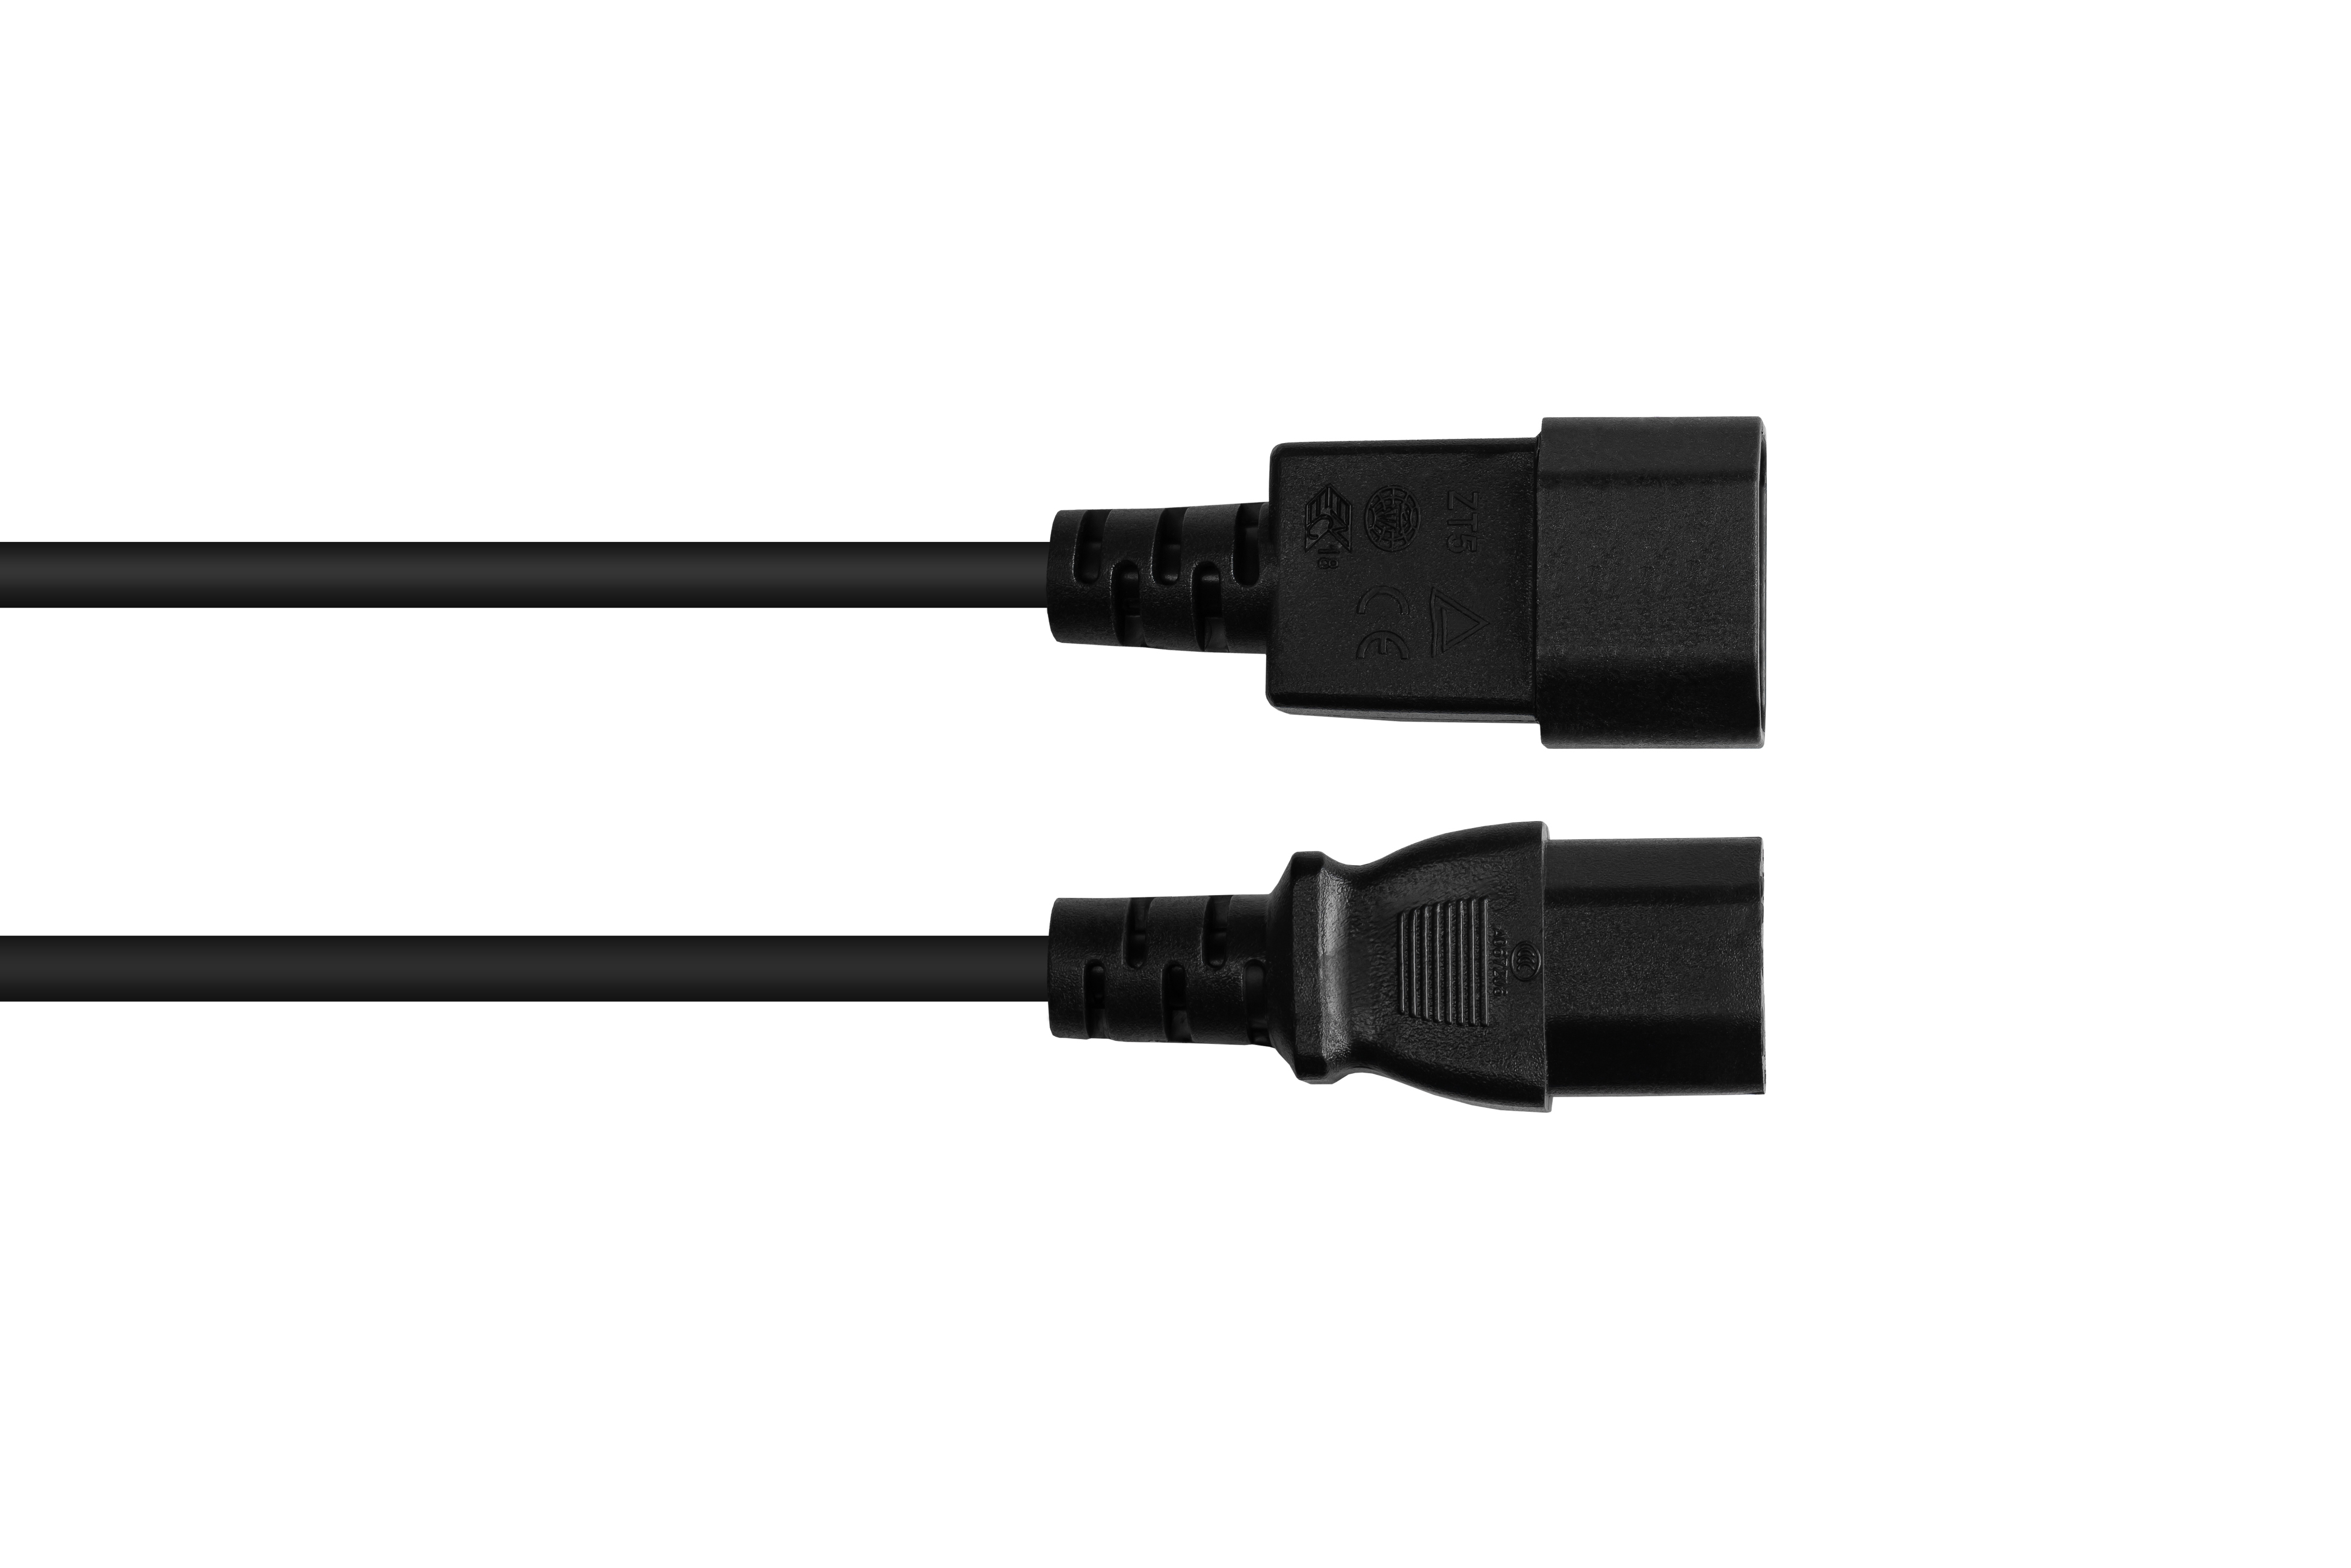 GOOD CONNECTIONS Kaltgeräte-Warmgeräte-Verbindungskabel C14 (gerade) an 1.00 schwarz mm² Stromkabel, schwarz, (gerade), C15